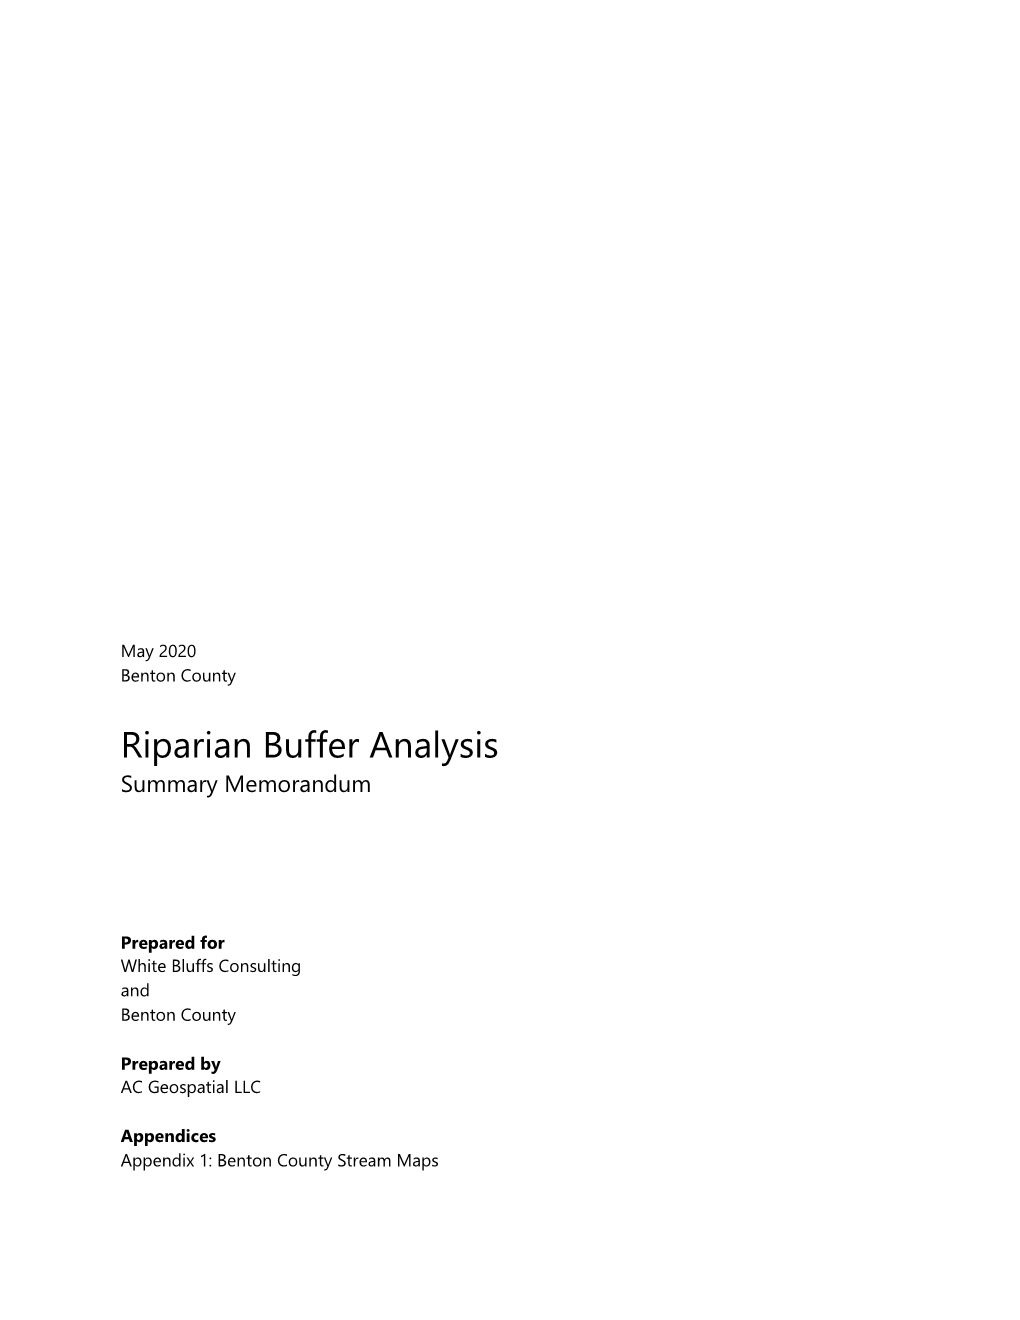 Riparian Buffer Analysis Summary Memorandum